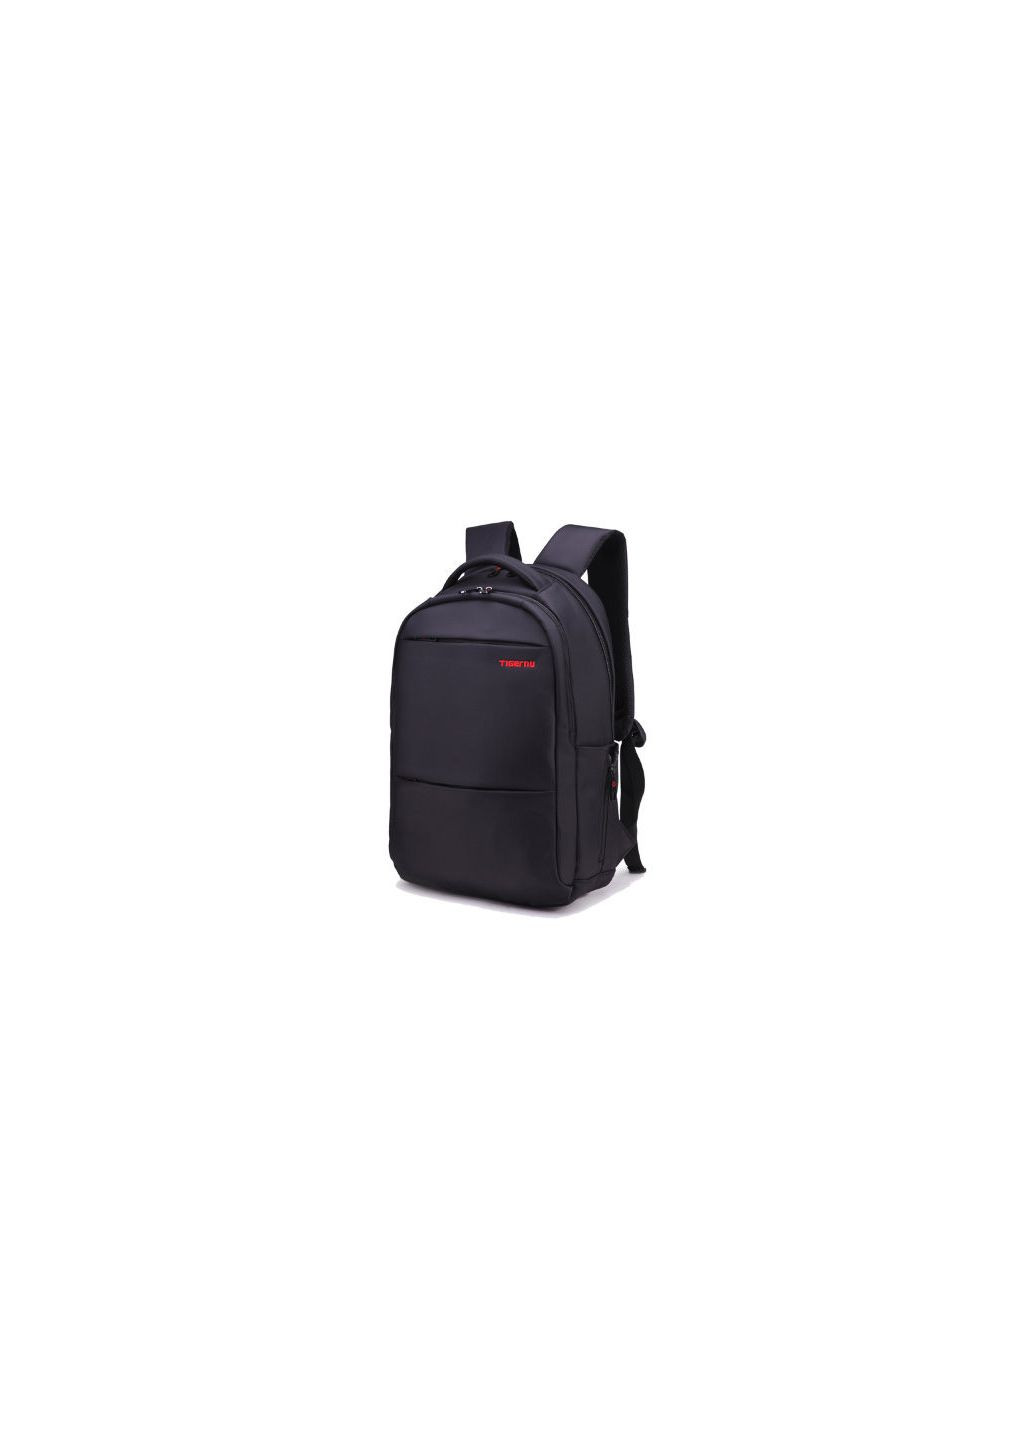 Рюкзак под ноутбуки черный с красным логотипом Tigernu (290683256)